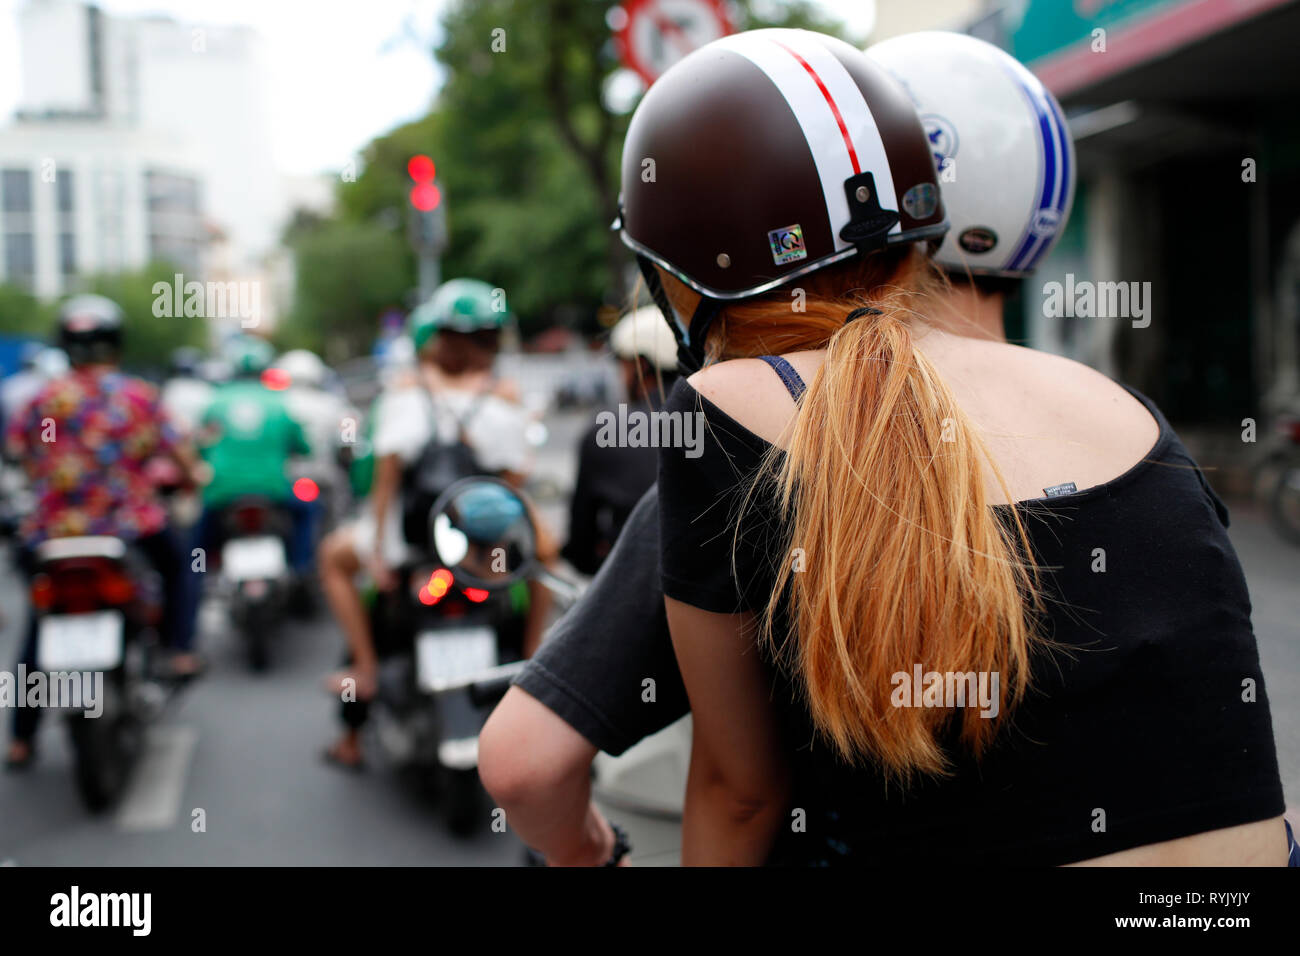 Tráfico pesado. Motos en la calle. Ho Chi Minh City. Vietnam. Foto de stock